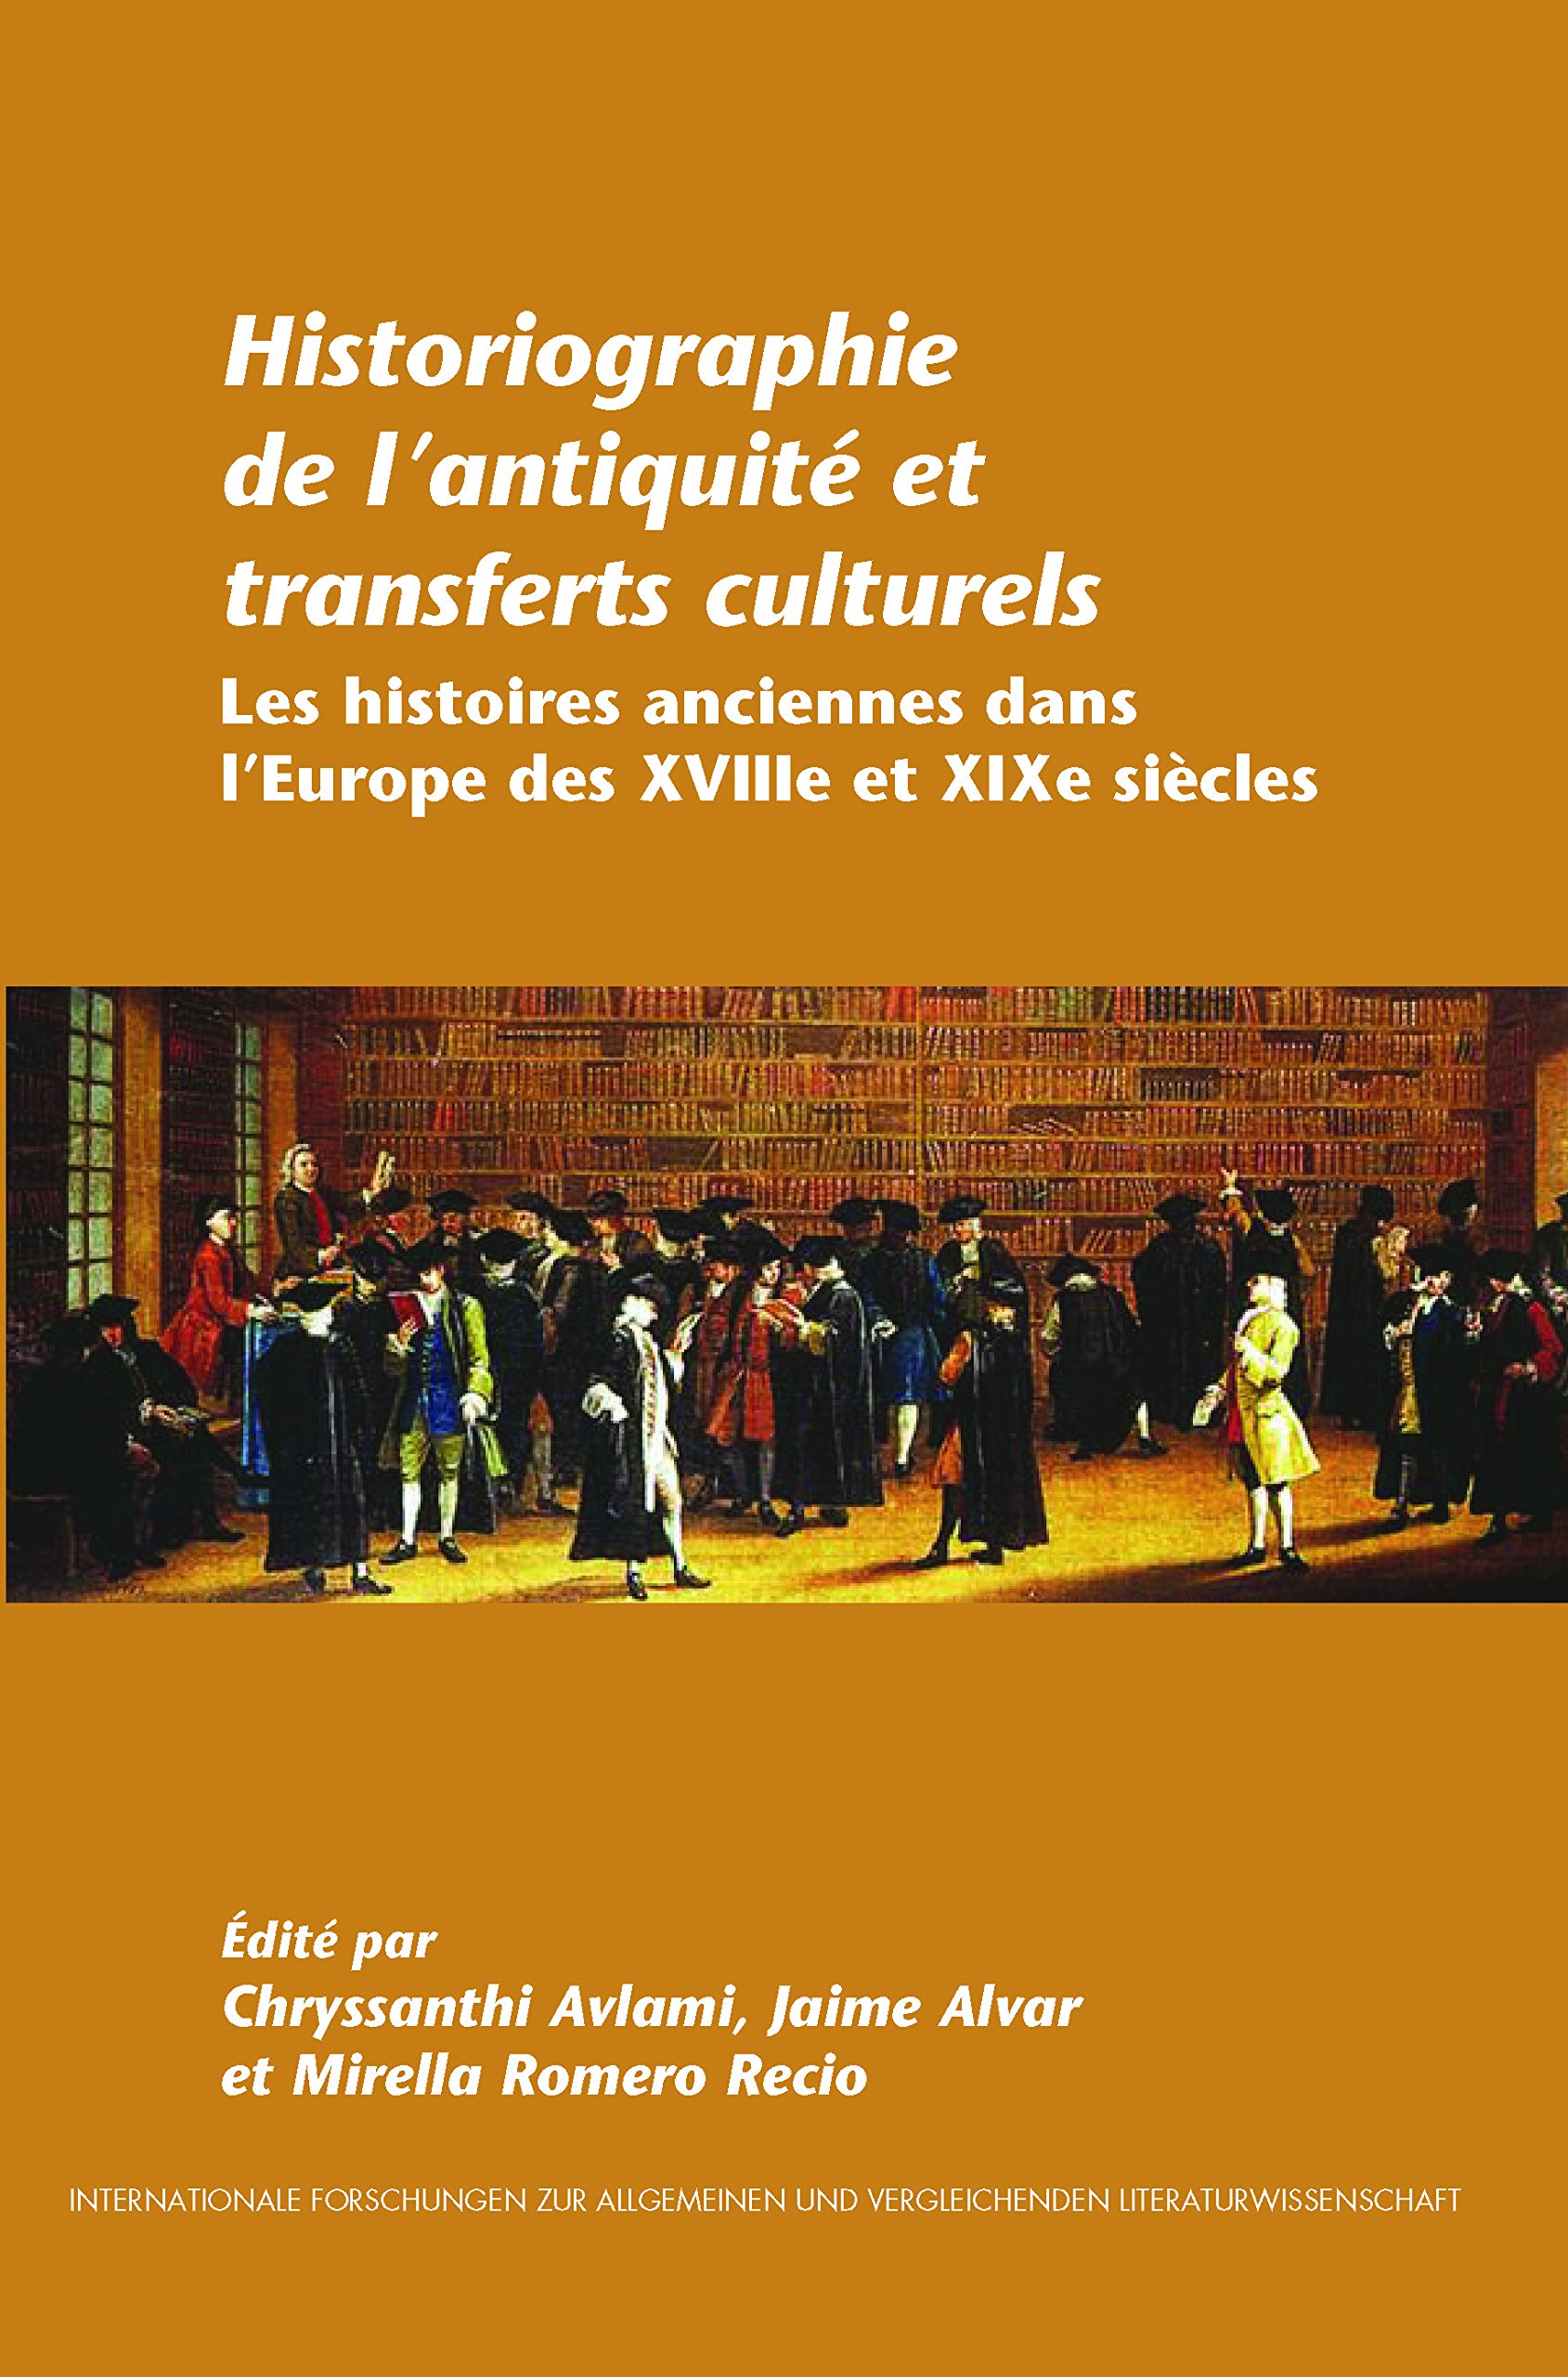 Imagen de portada del libro Historiographie de l'antiquité et transferts culturels